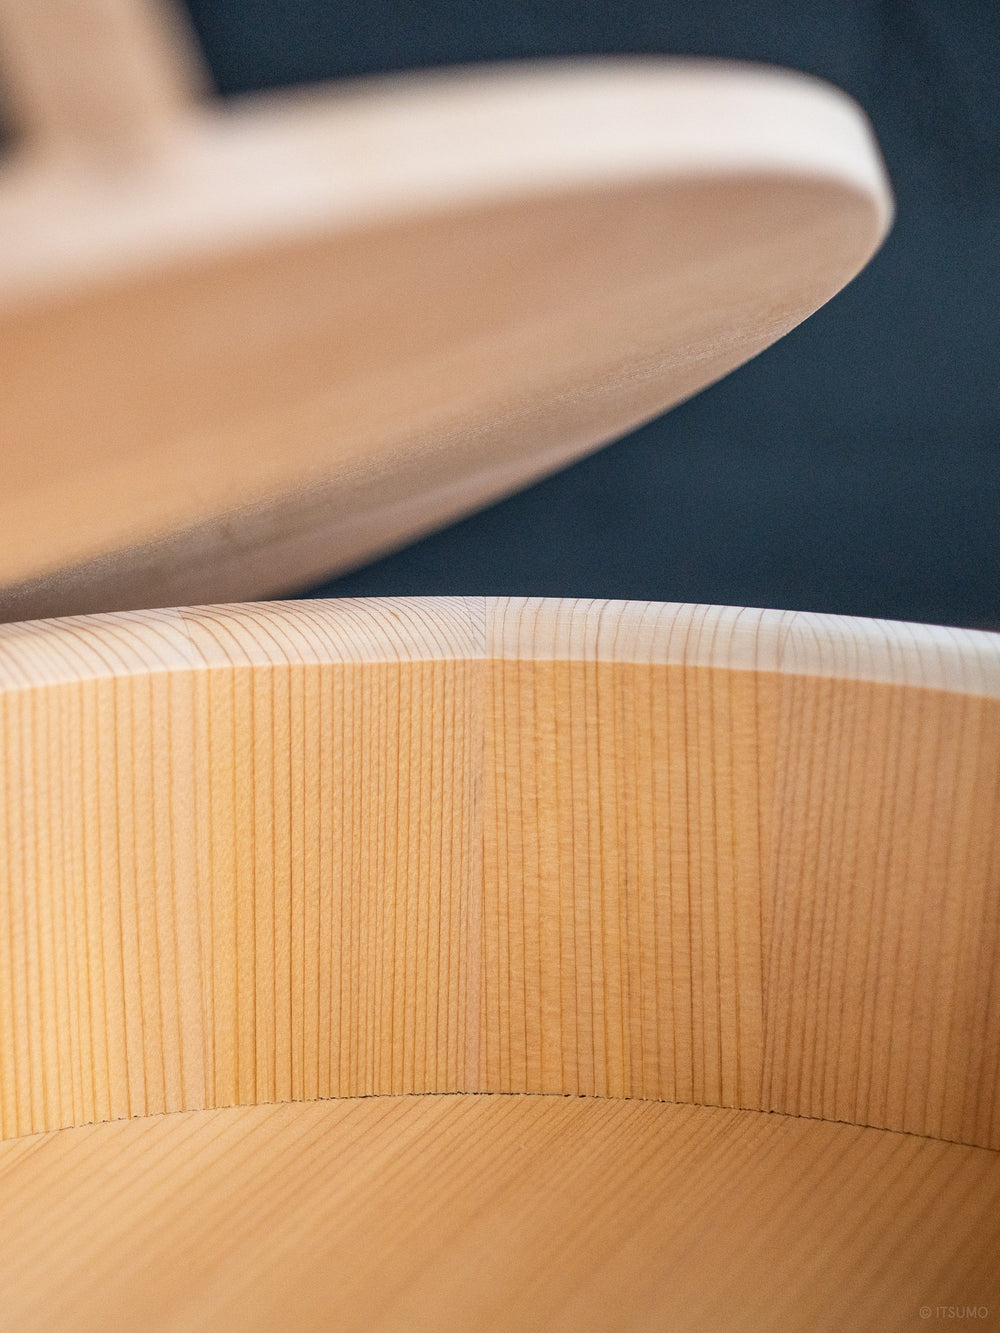 Azmaya kiso sawara sushi rice mixing bowl close up wood grain detail on the inside